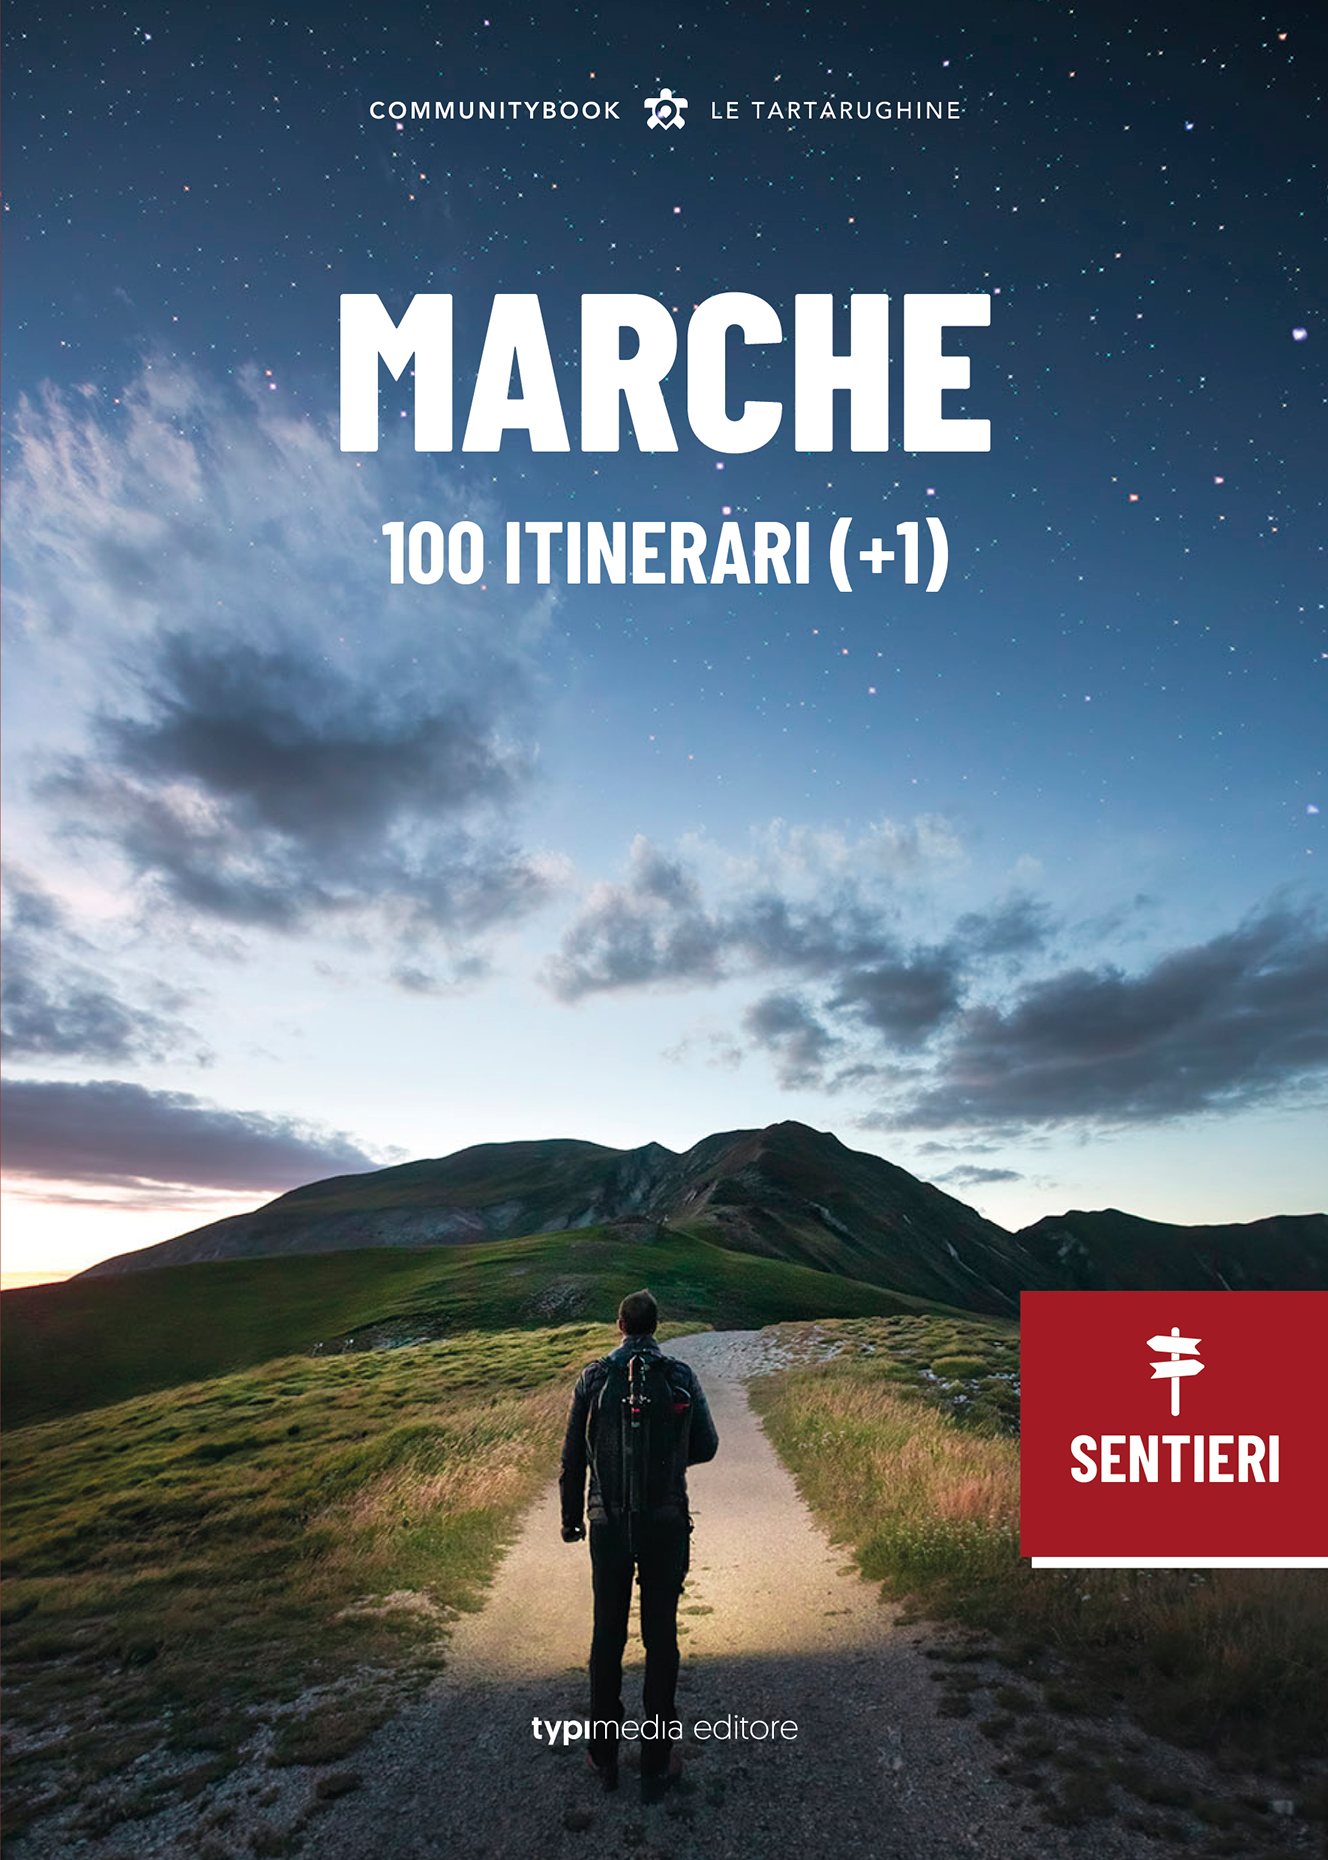 MARCHE, 100 ITINERARI (+1)